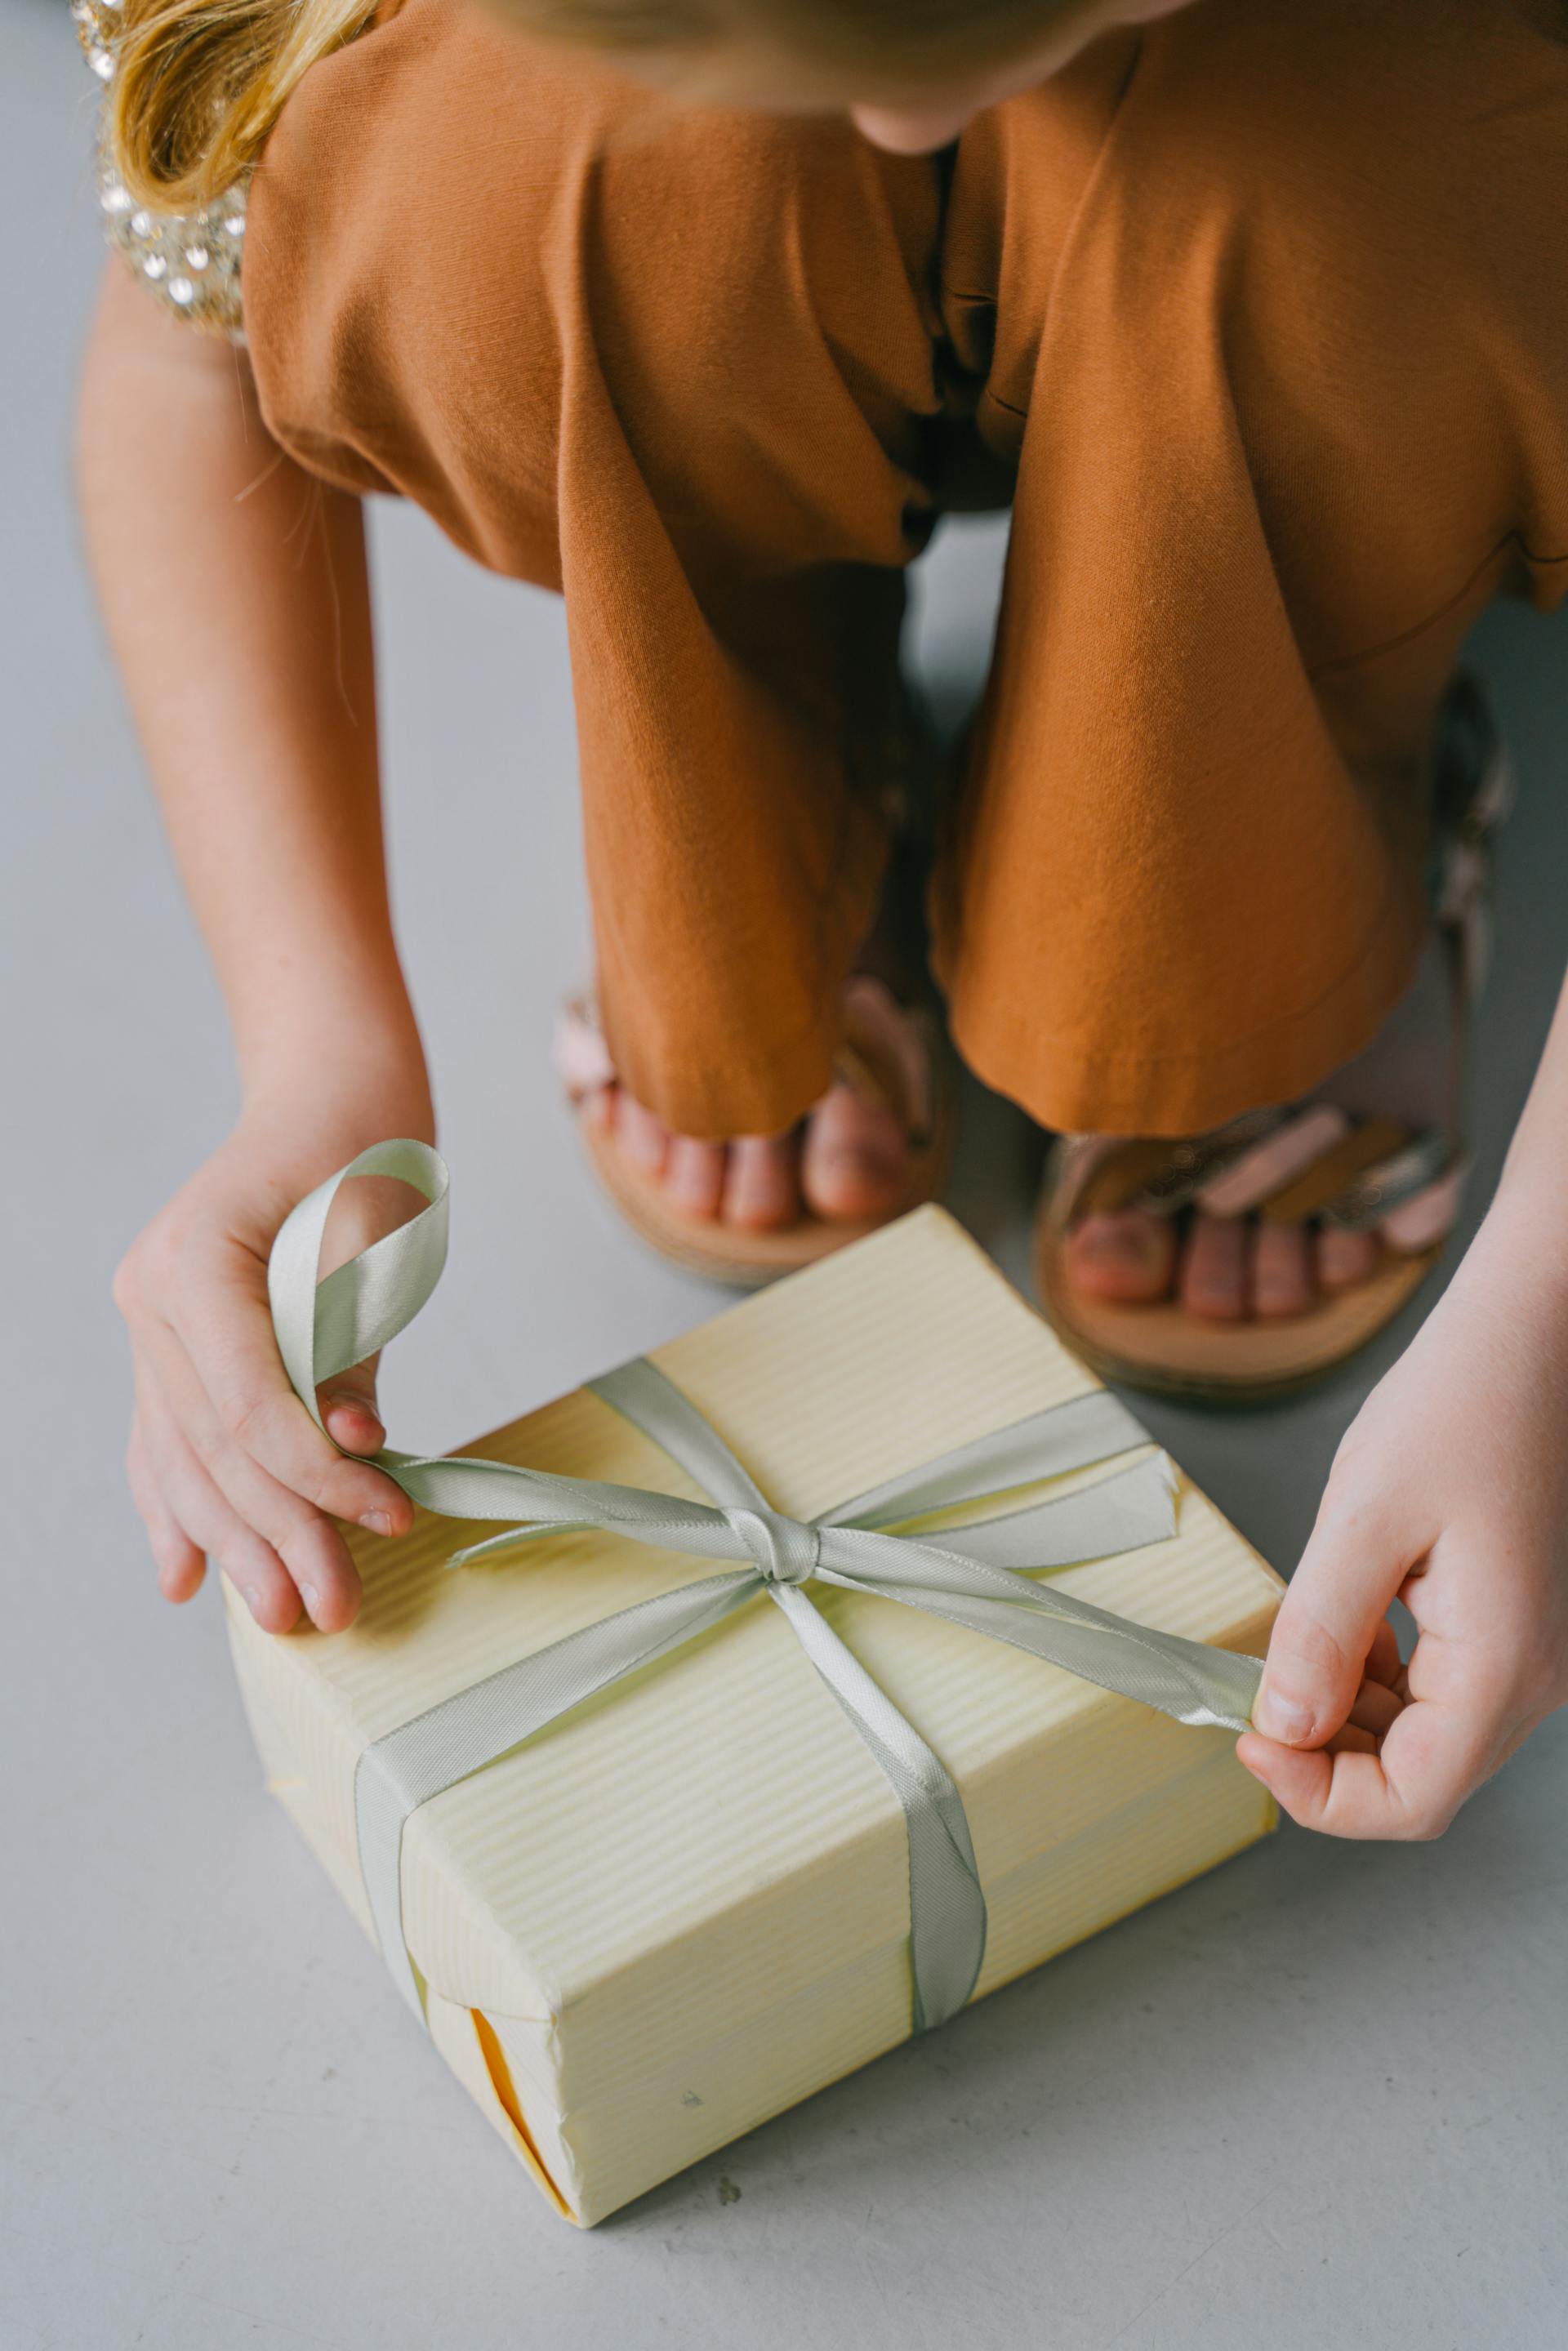 Una mujer atando la cinta de una caja de regalo | Fuente: Pexels